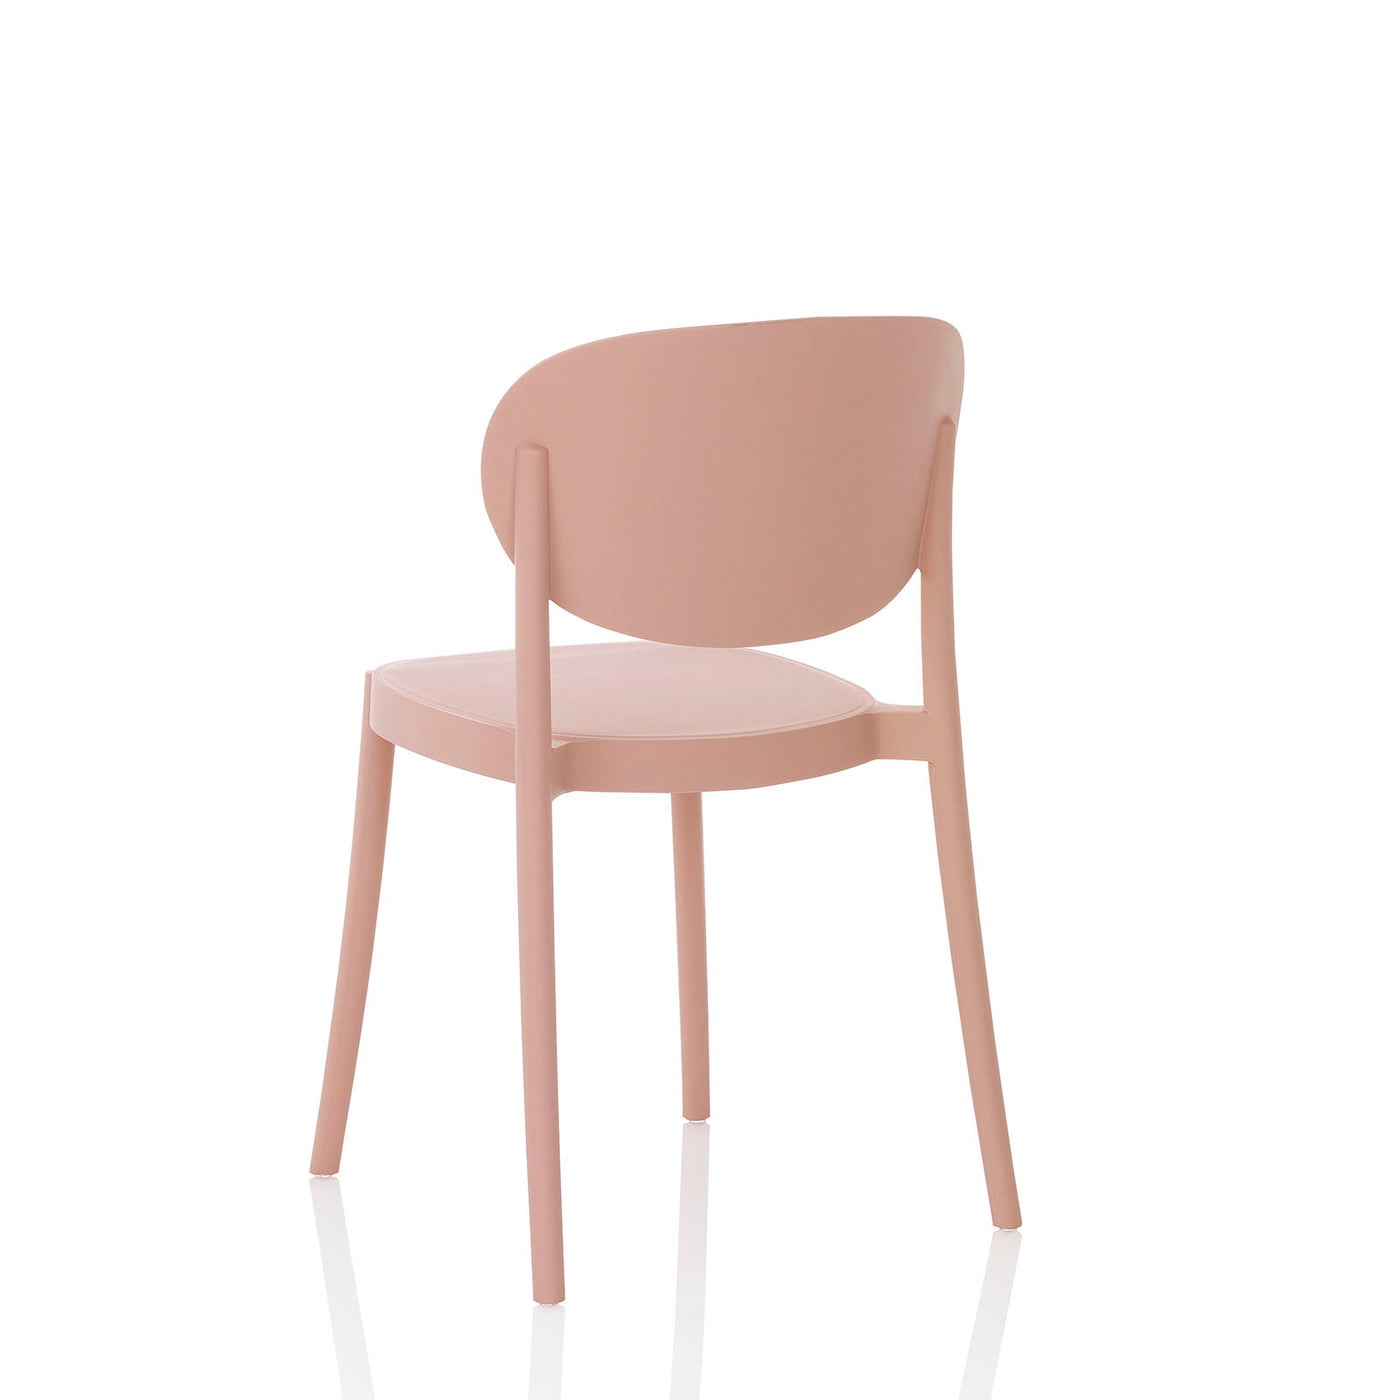 Set of 4 pink ICE indoor/outdoor chairs